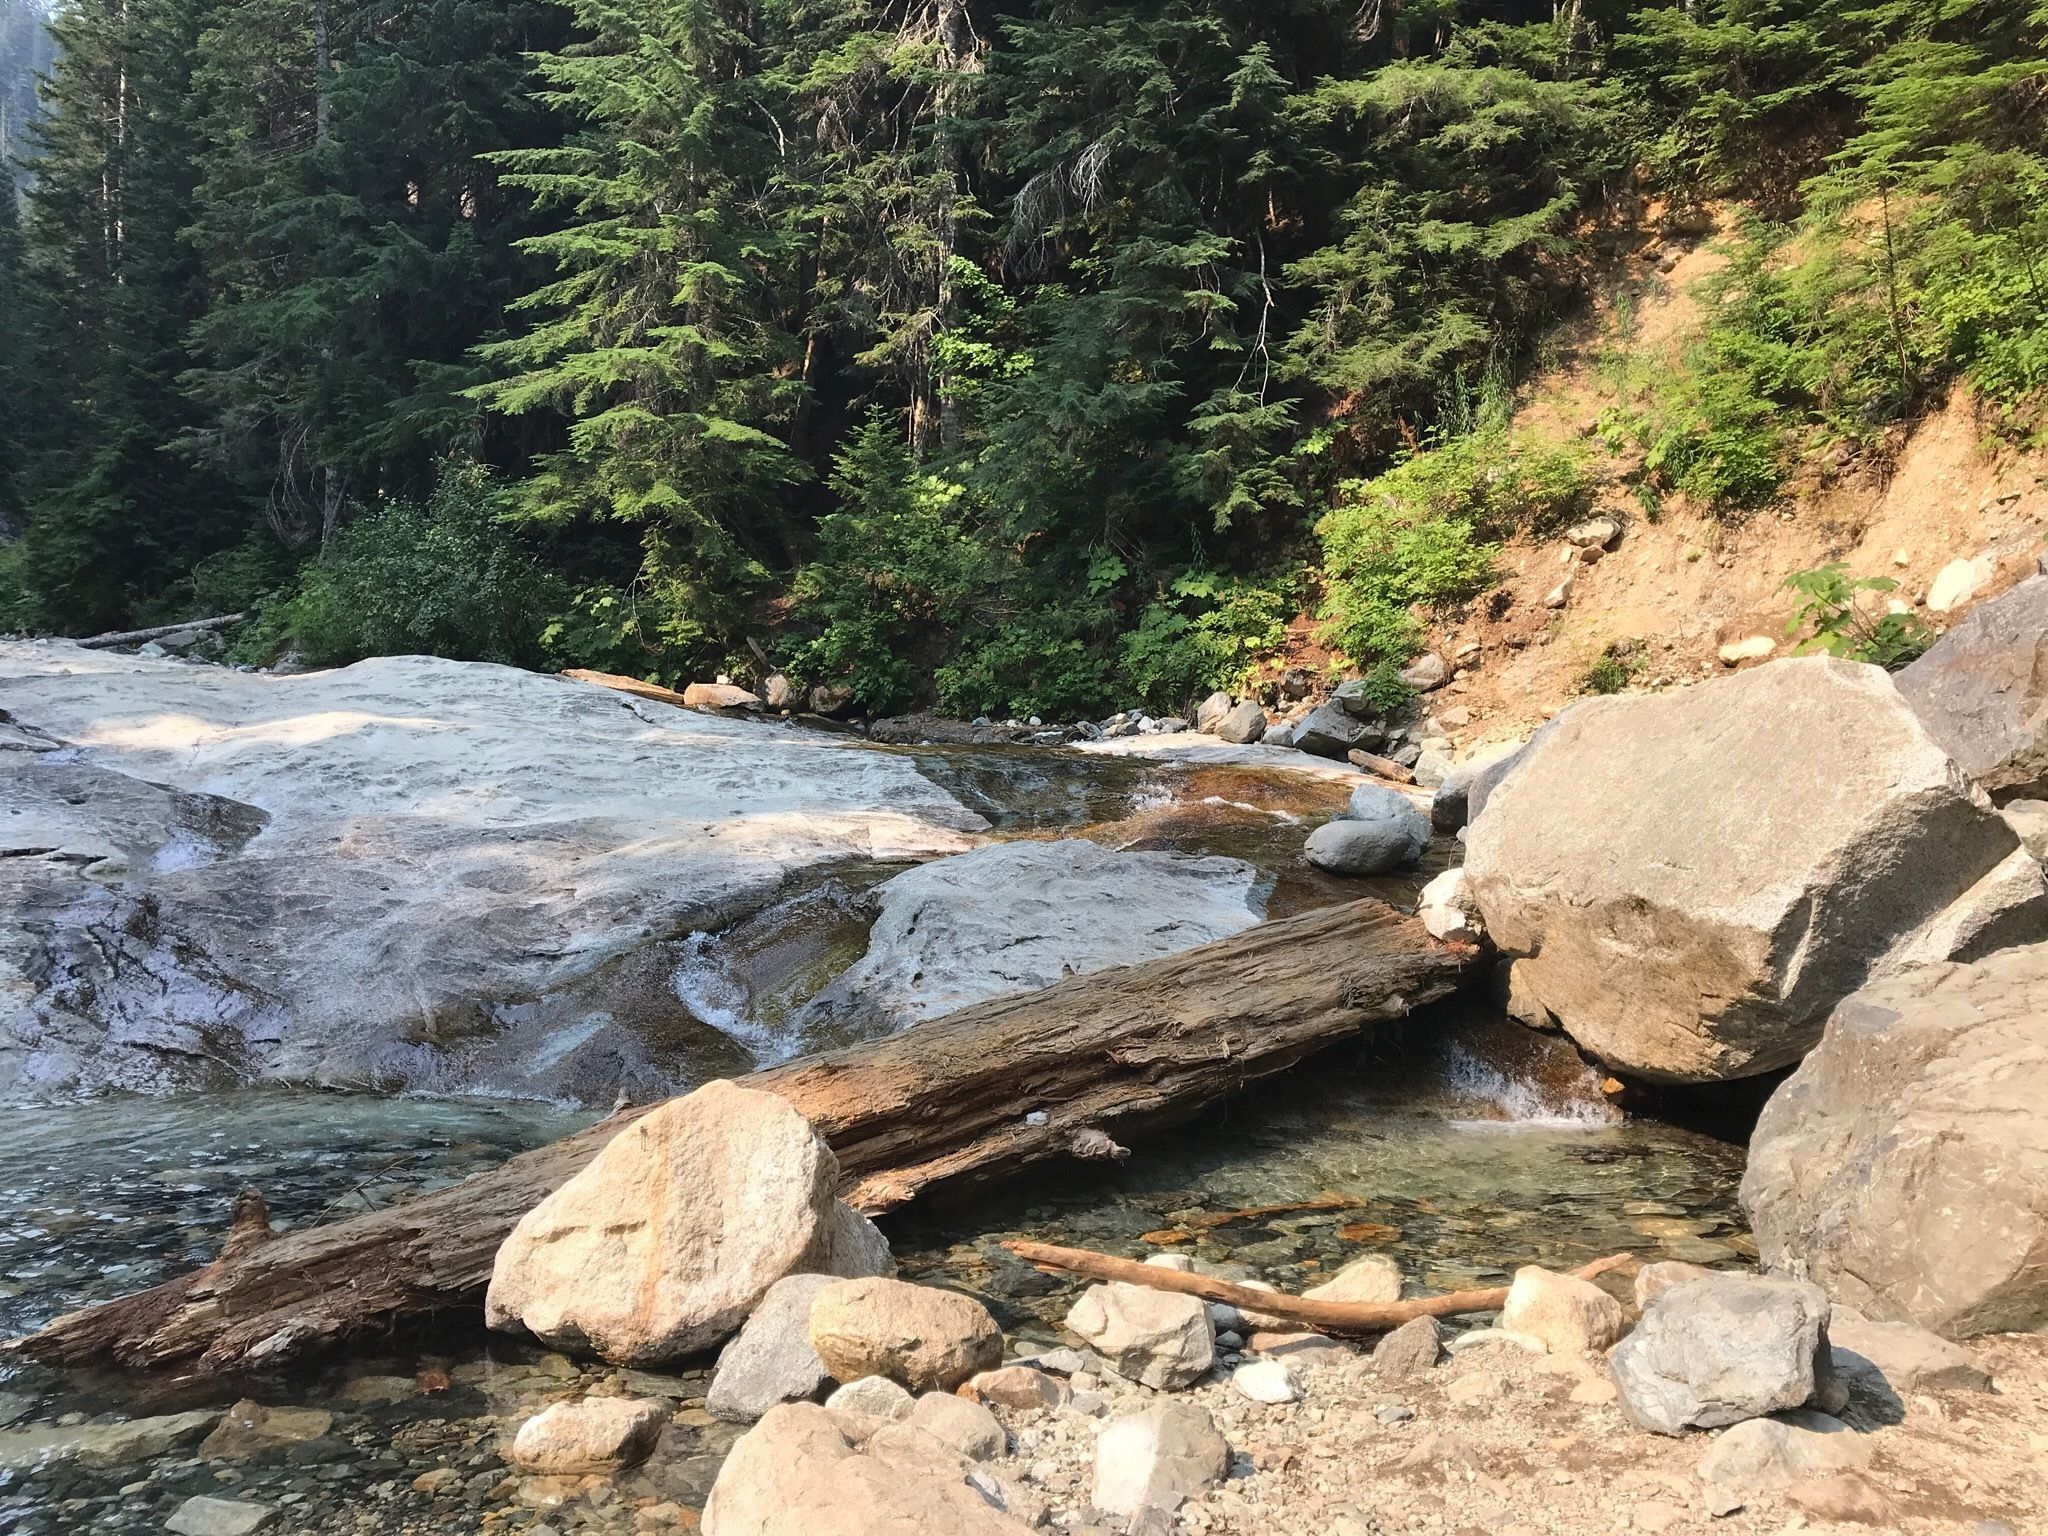 Denny Creek — Washington Trails Association